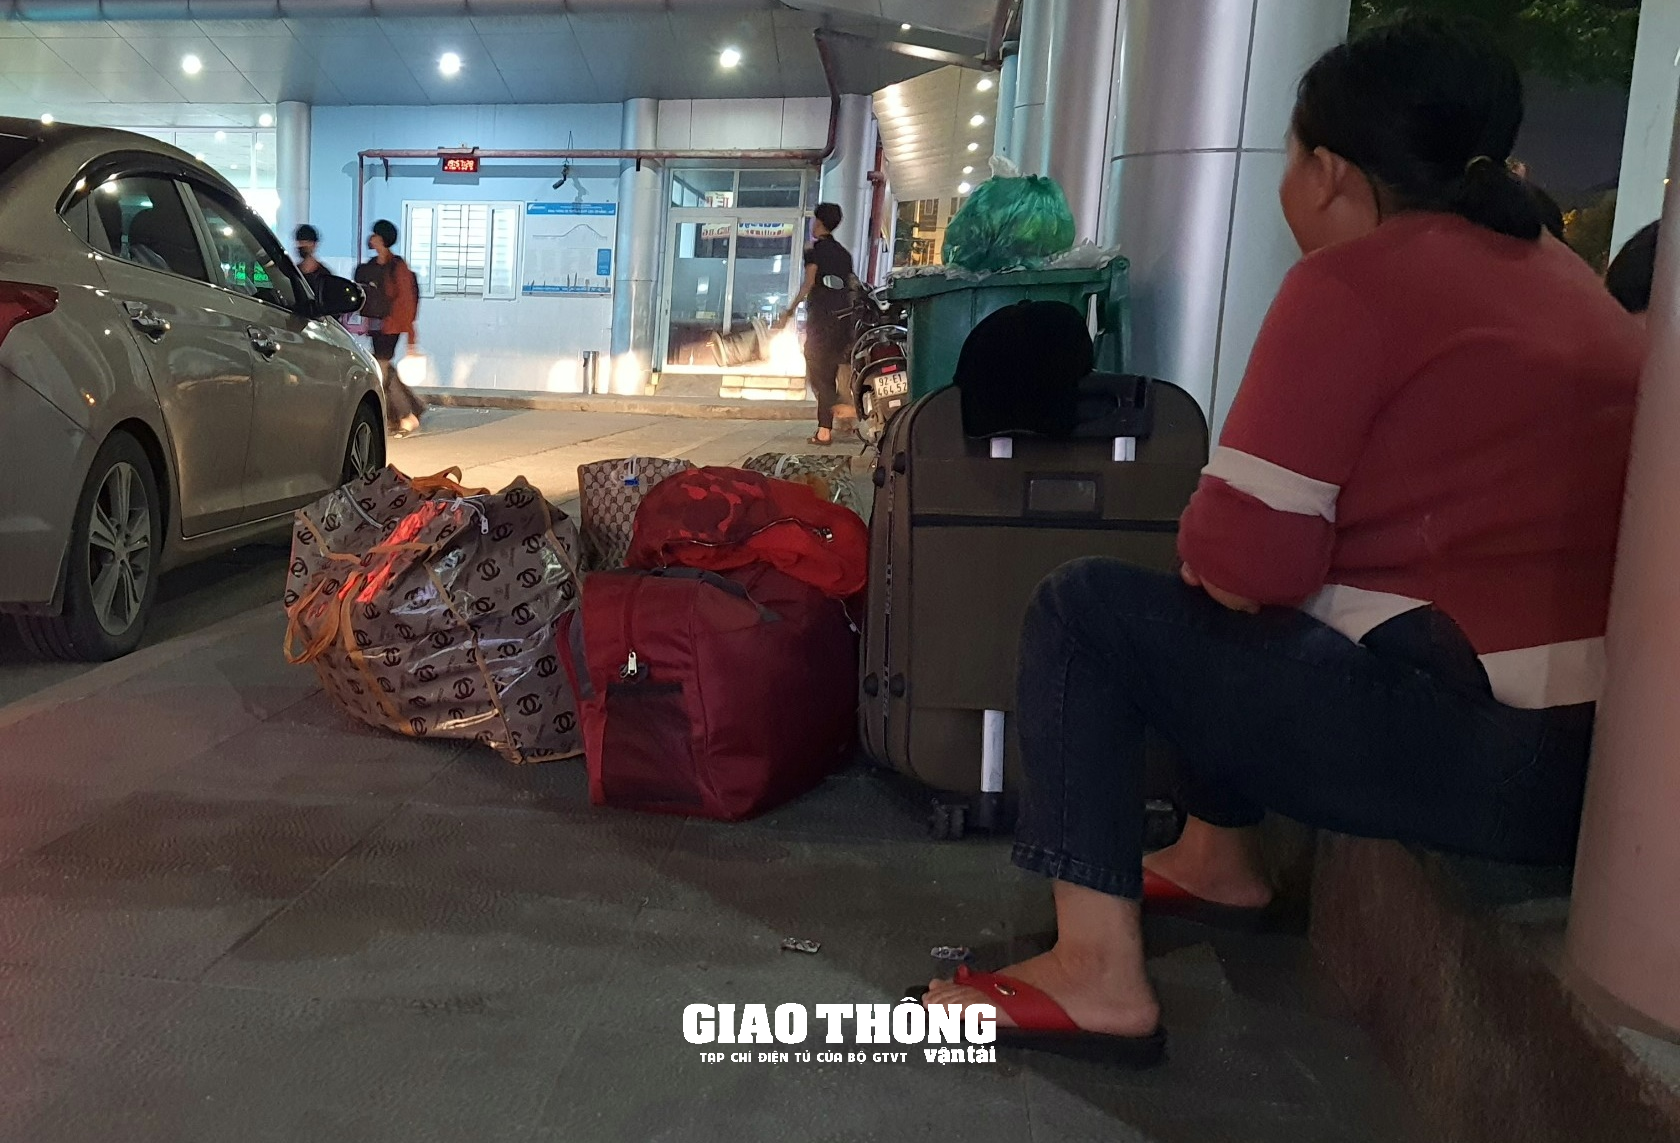 Chùm ảnh: Bến xe, sân bay Đà Nẵng nhộn nhịp khách những ngày cuối năm - Ảnh 8.